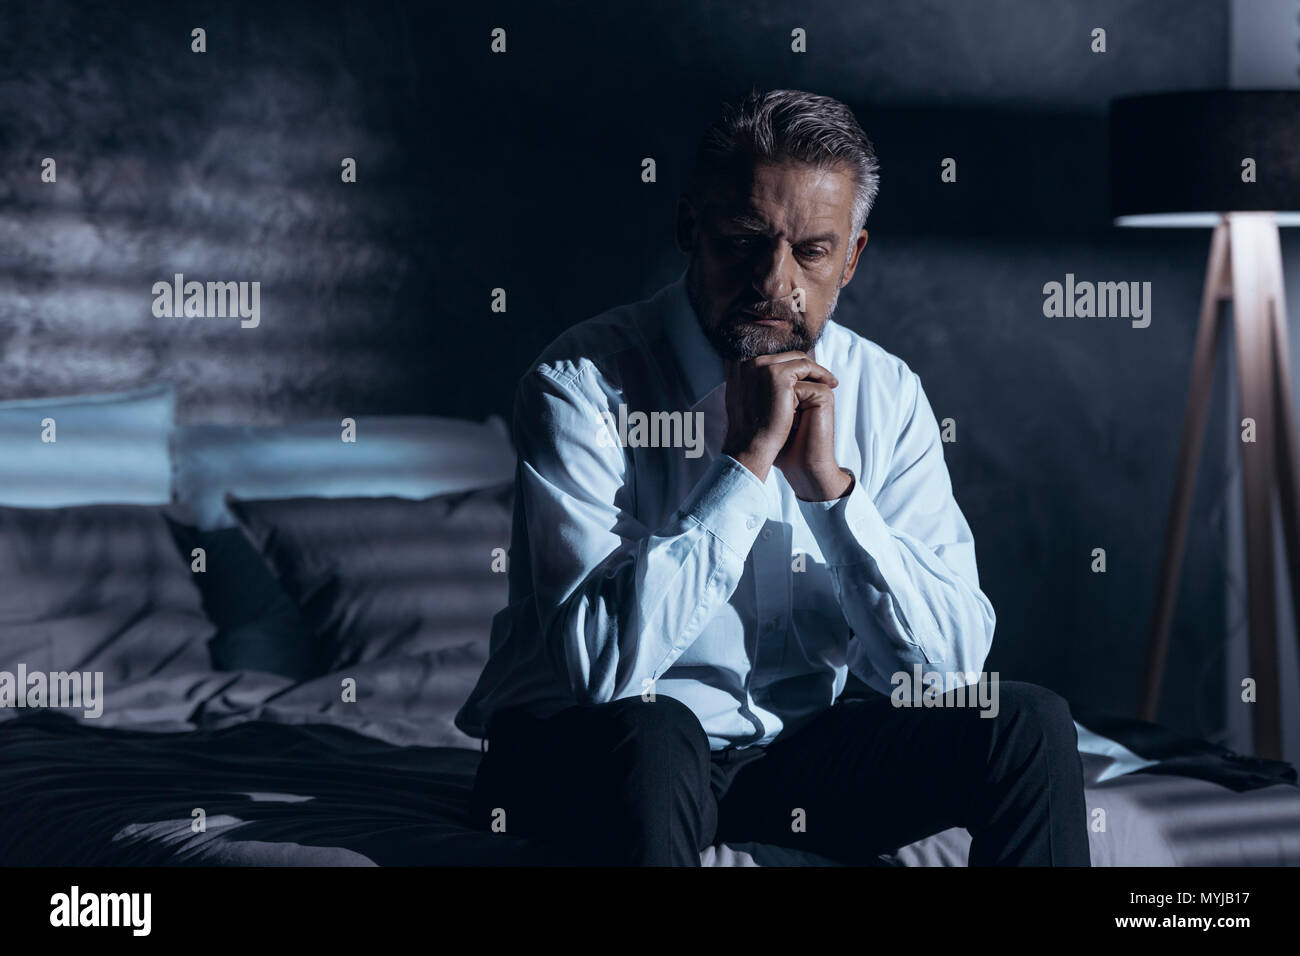 Estresado y deprimido hombre sentado solo en la oscuridad con un problema Foto de stock